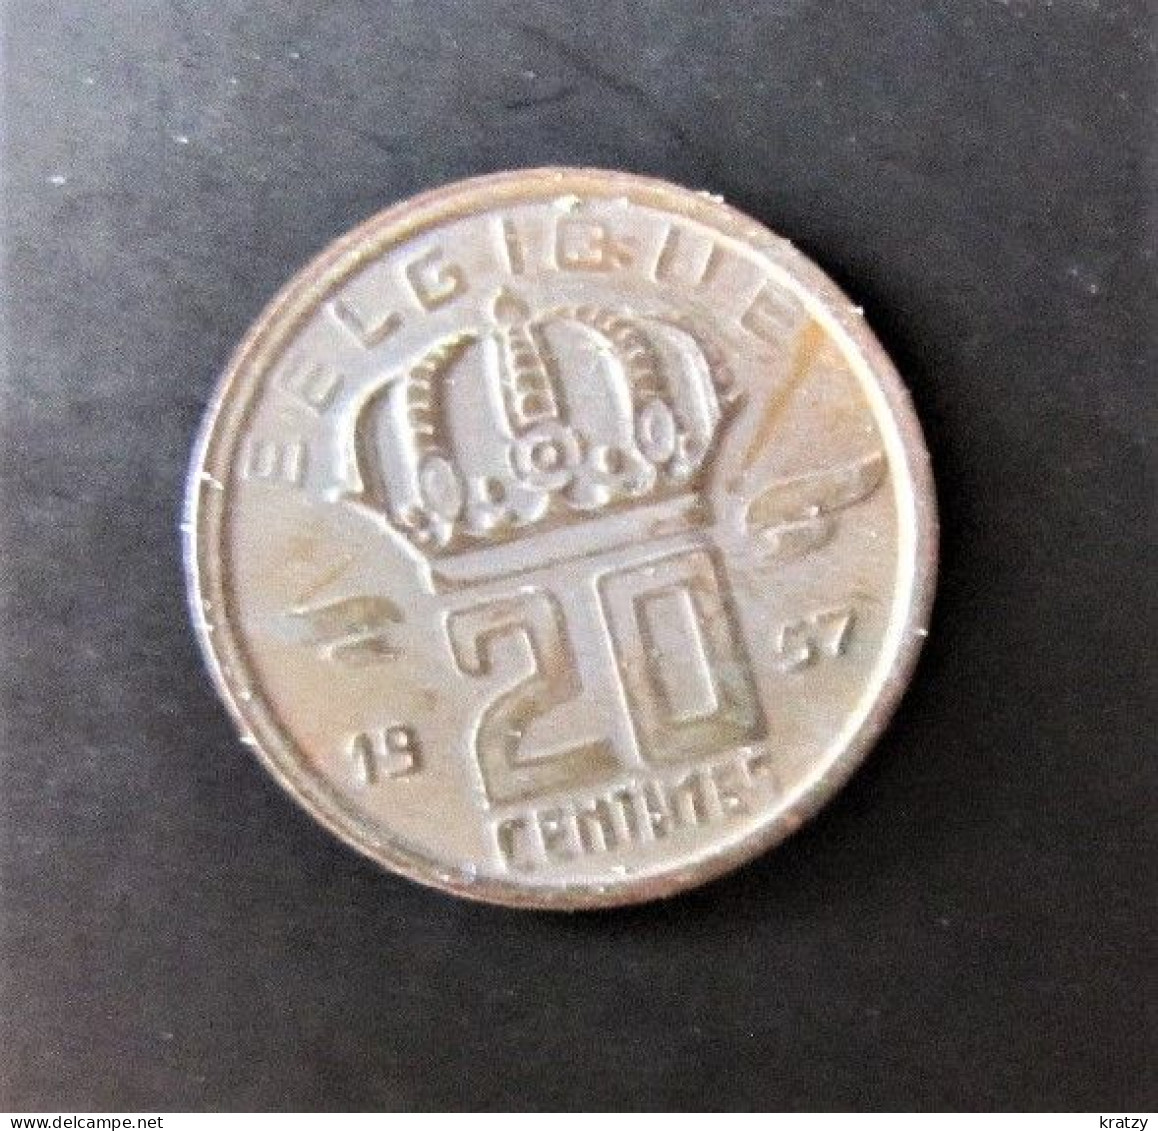 BELGIQUE - Pièce De 20 Centimes - Cuivre - 1957 - 20 Cent